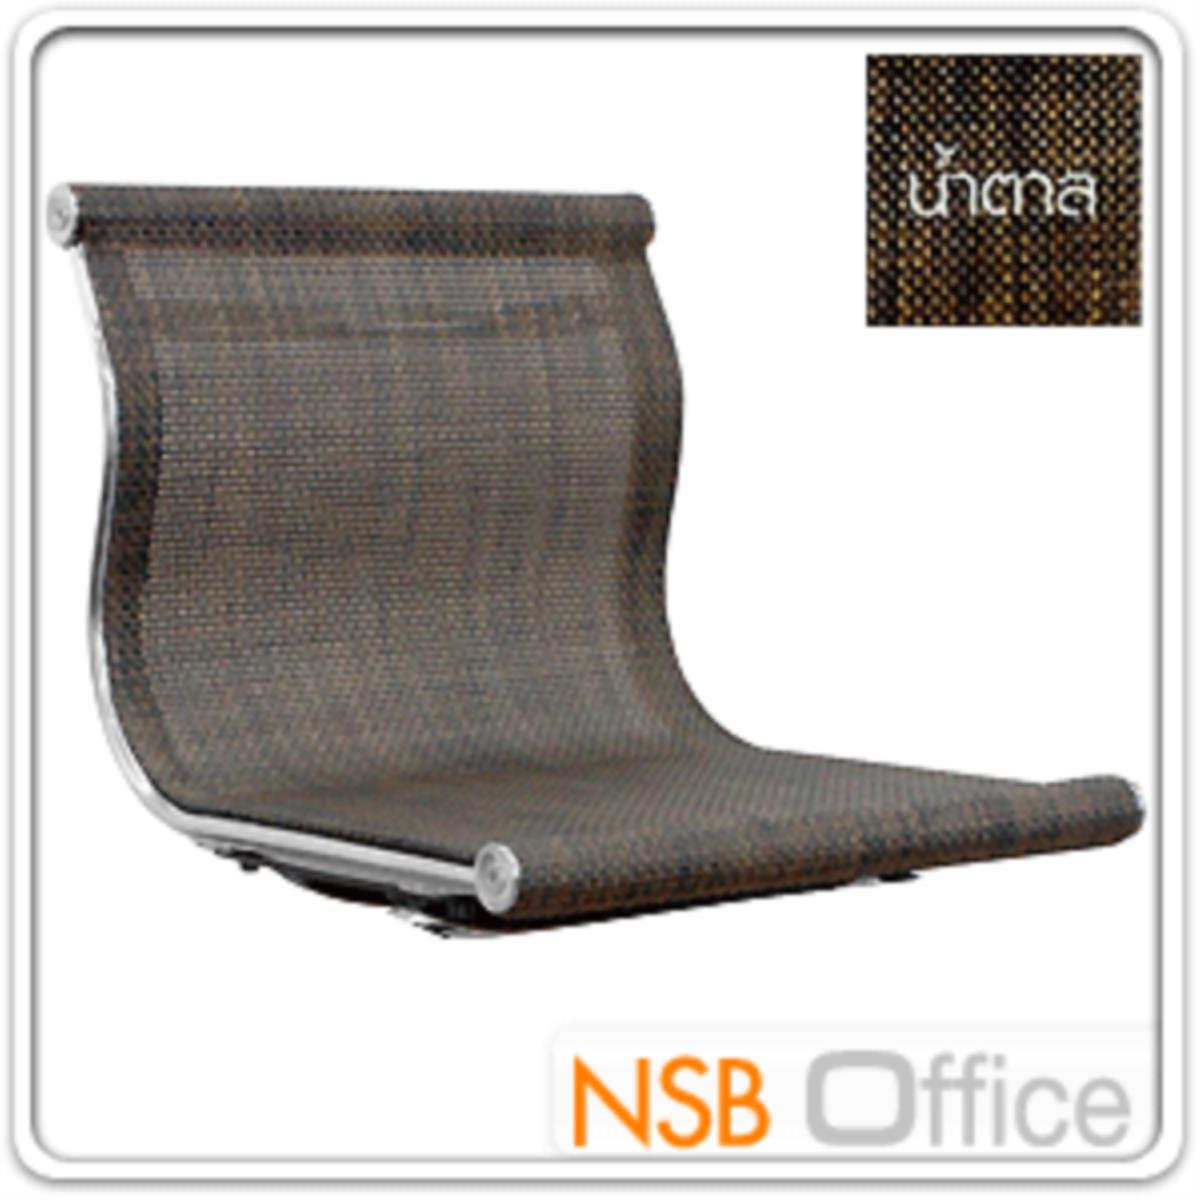 เก้าอี้บาร์สูงผ้าเน็ต รุ่น BH-8818 ขนาด 39W cm. โครงเหล็กชุบโครเมี่ยม 